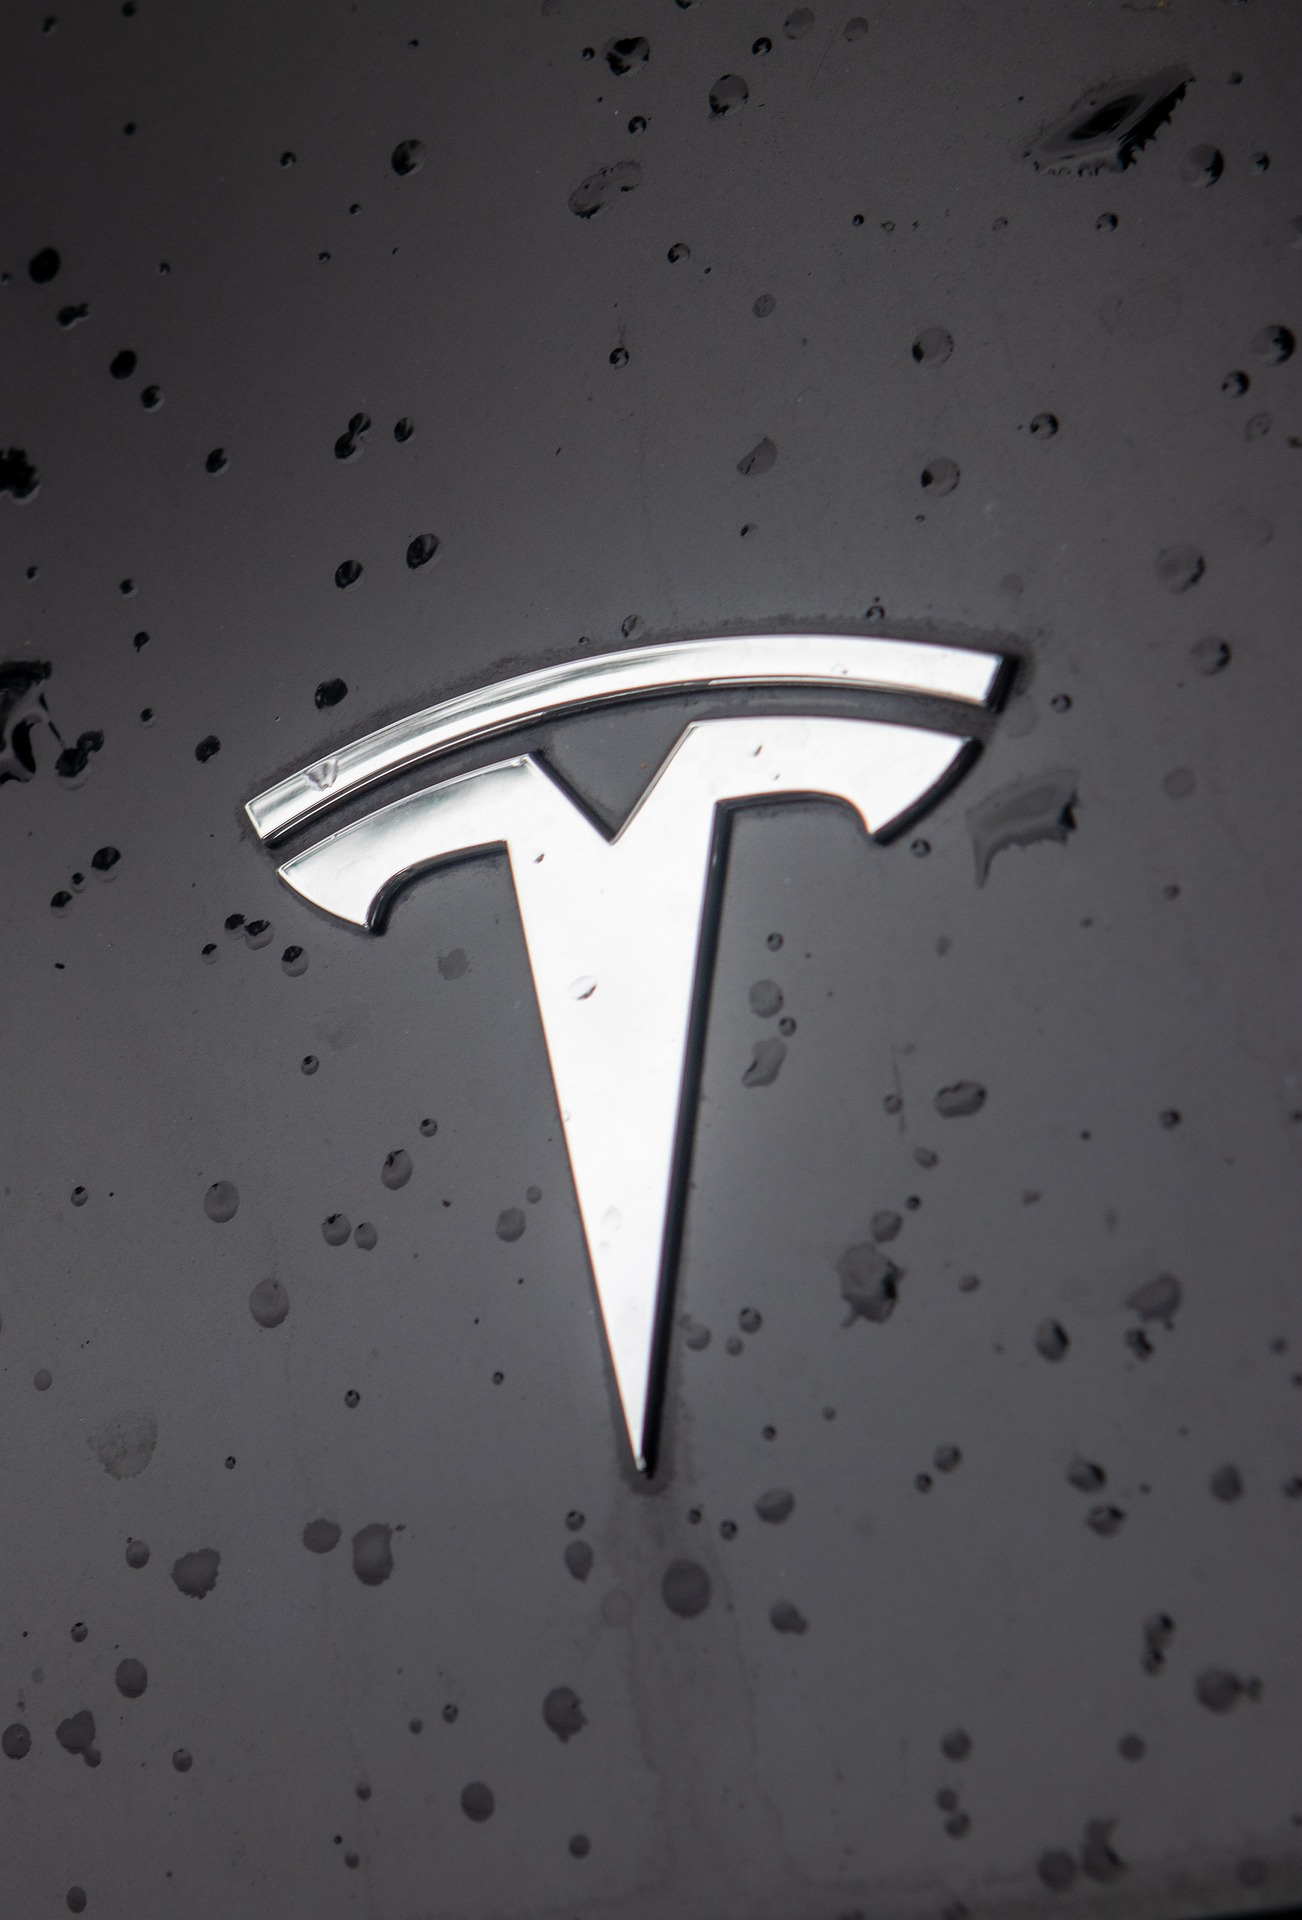 Tesla senkt die Preise seiner Fahrzeuge deutlich.